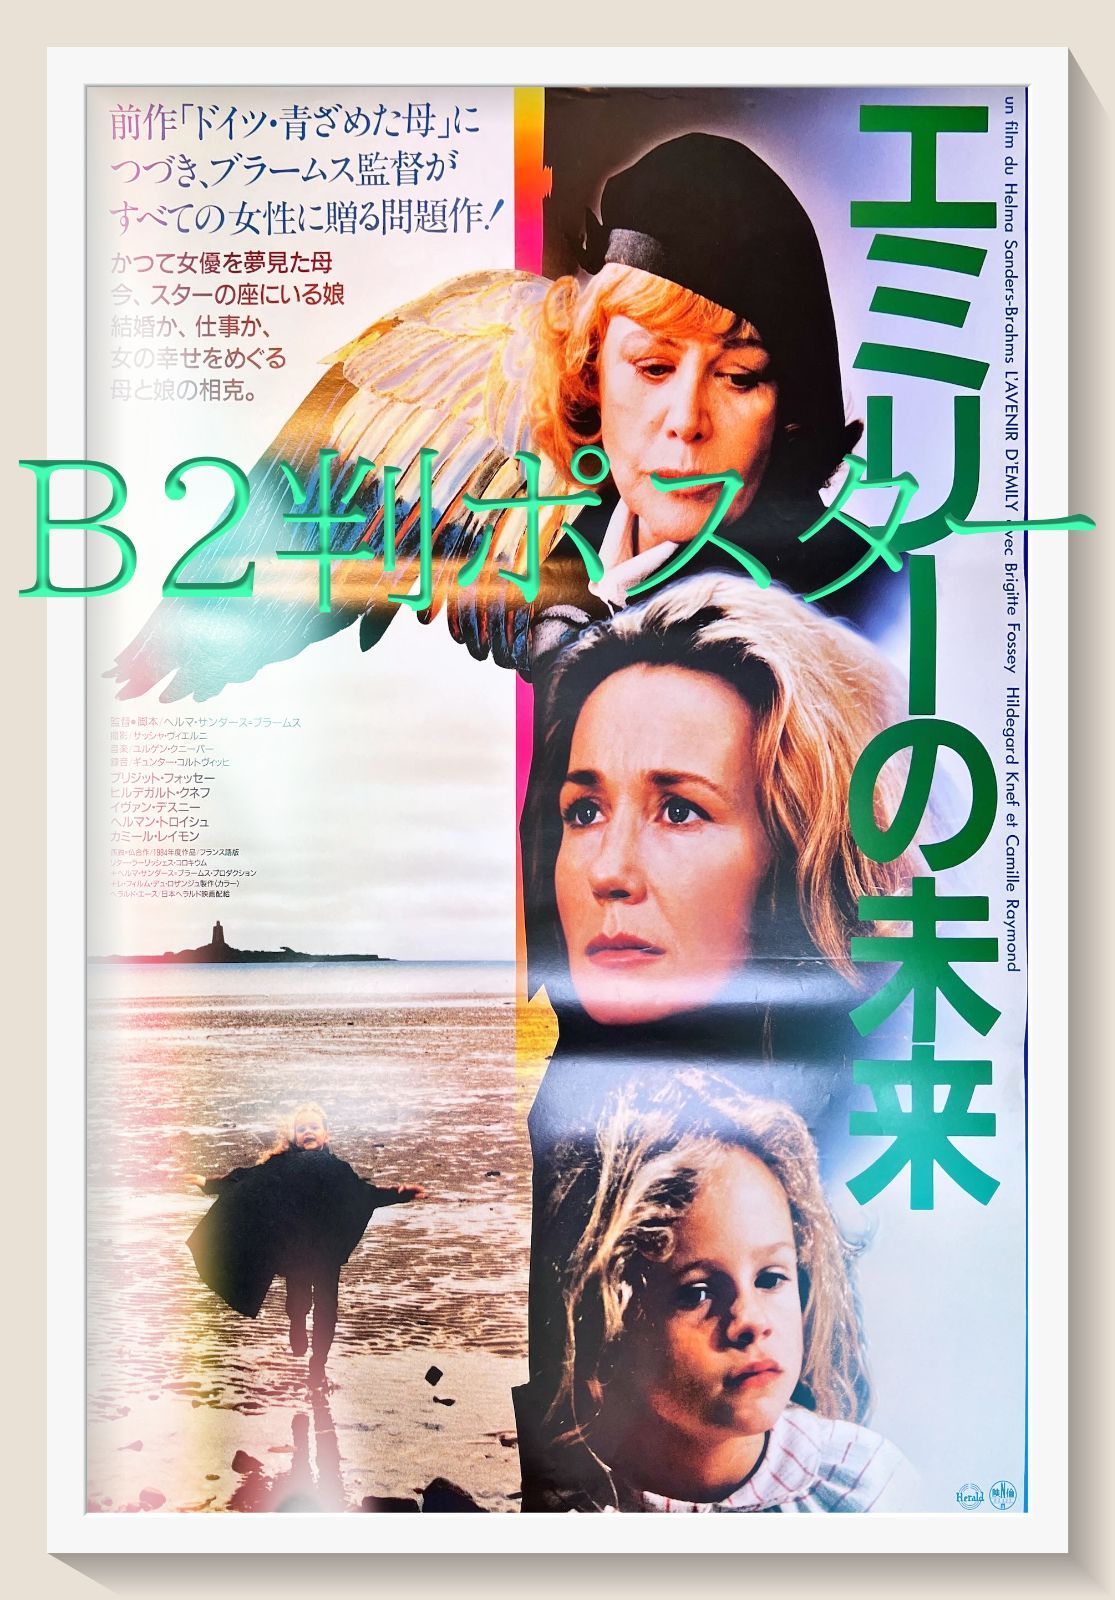 『エミリーの未来』映画B2判オリジナルポスター